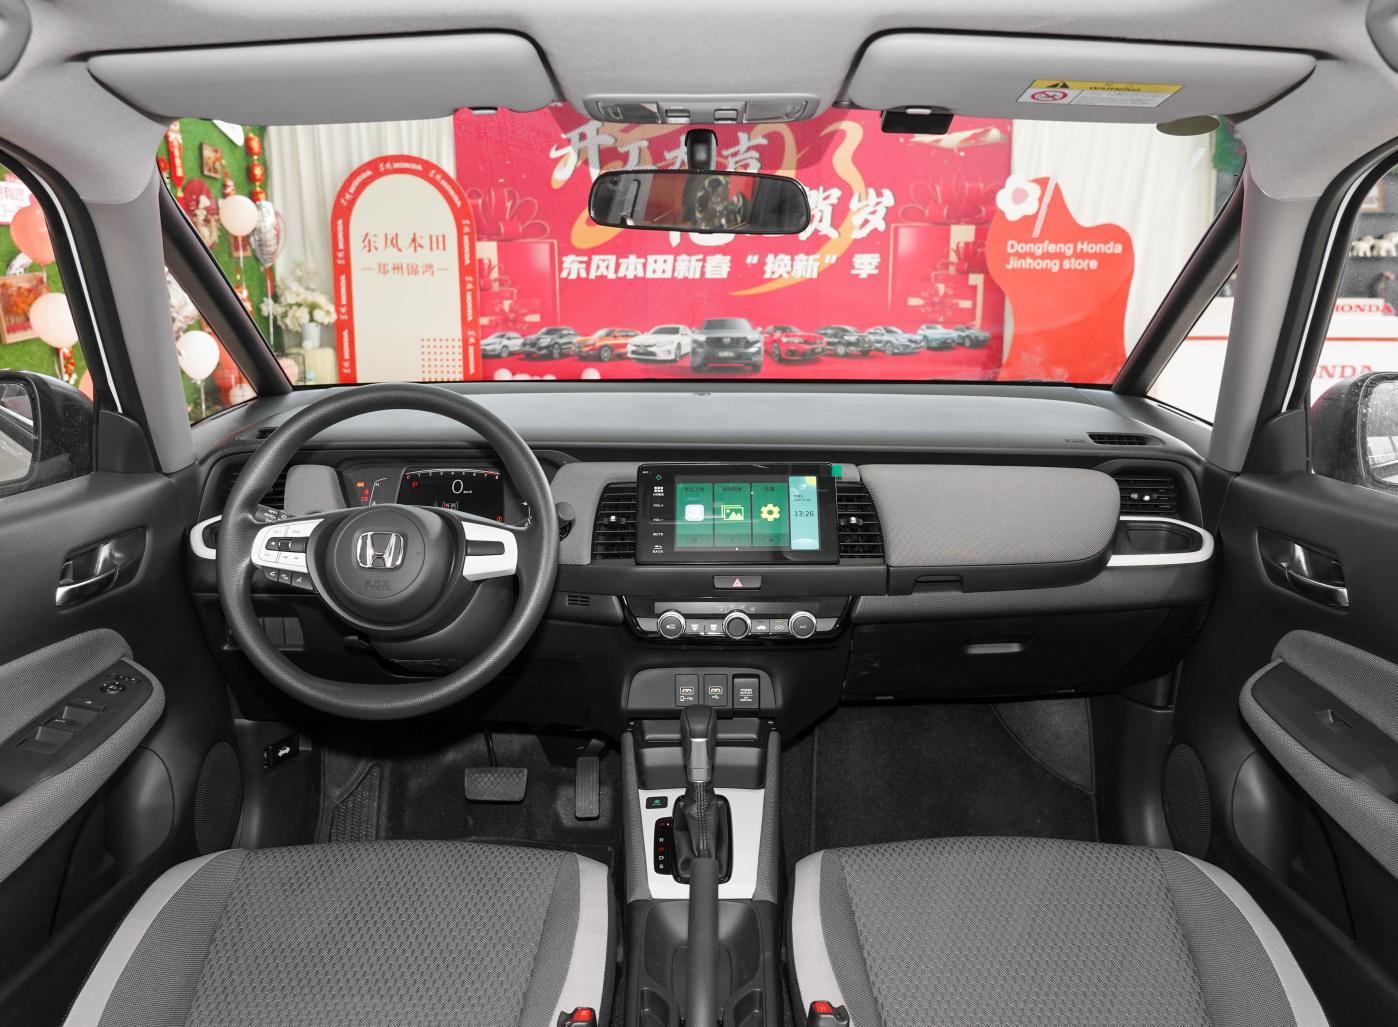 Dongfeng Honda Fit LIFE 1.5L CVT Small Car K Car - Honda - 6